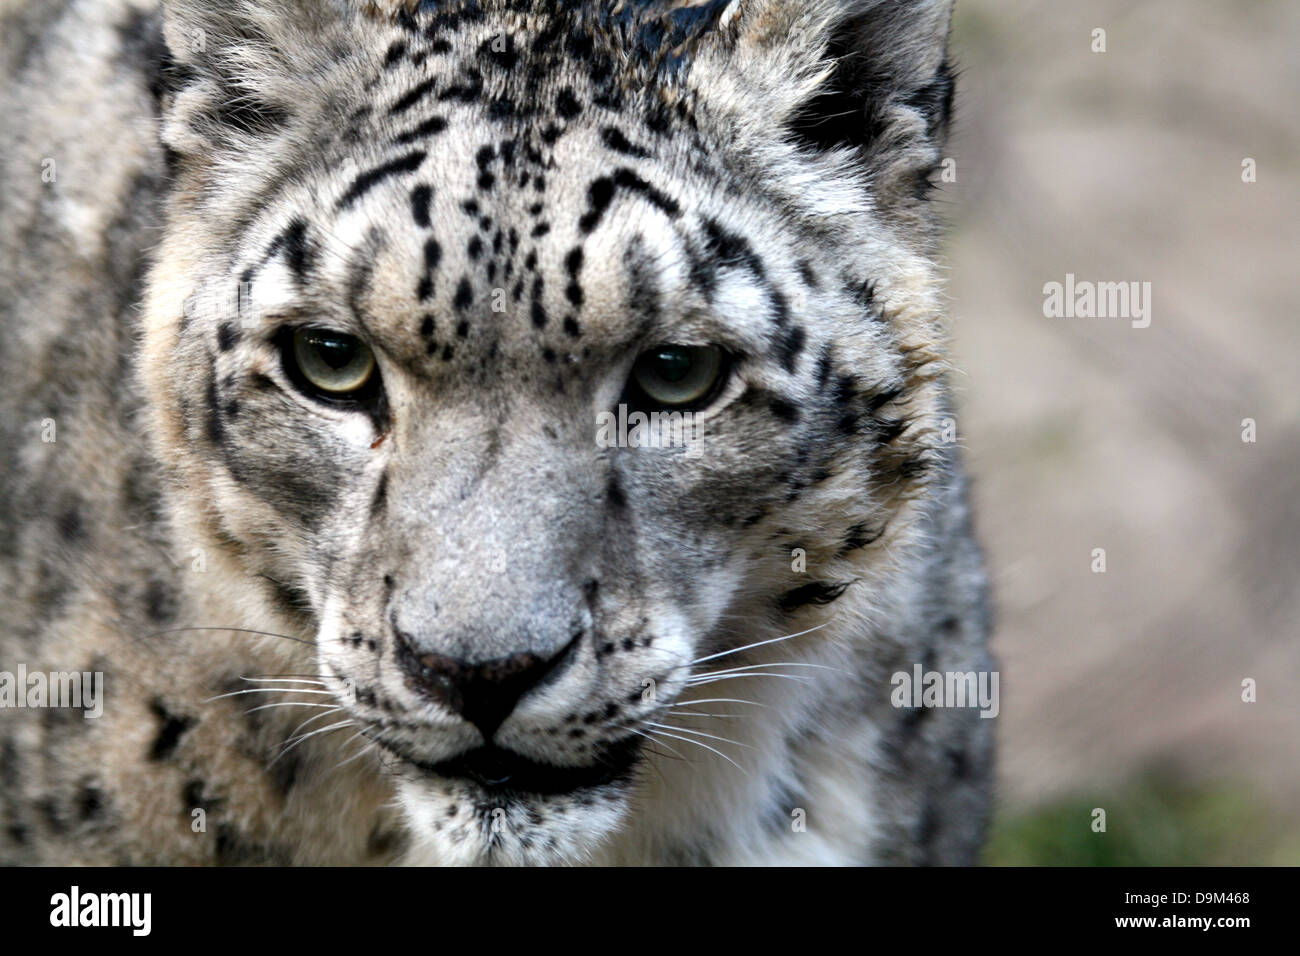 snow leopard portrait Stock Photo